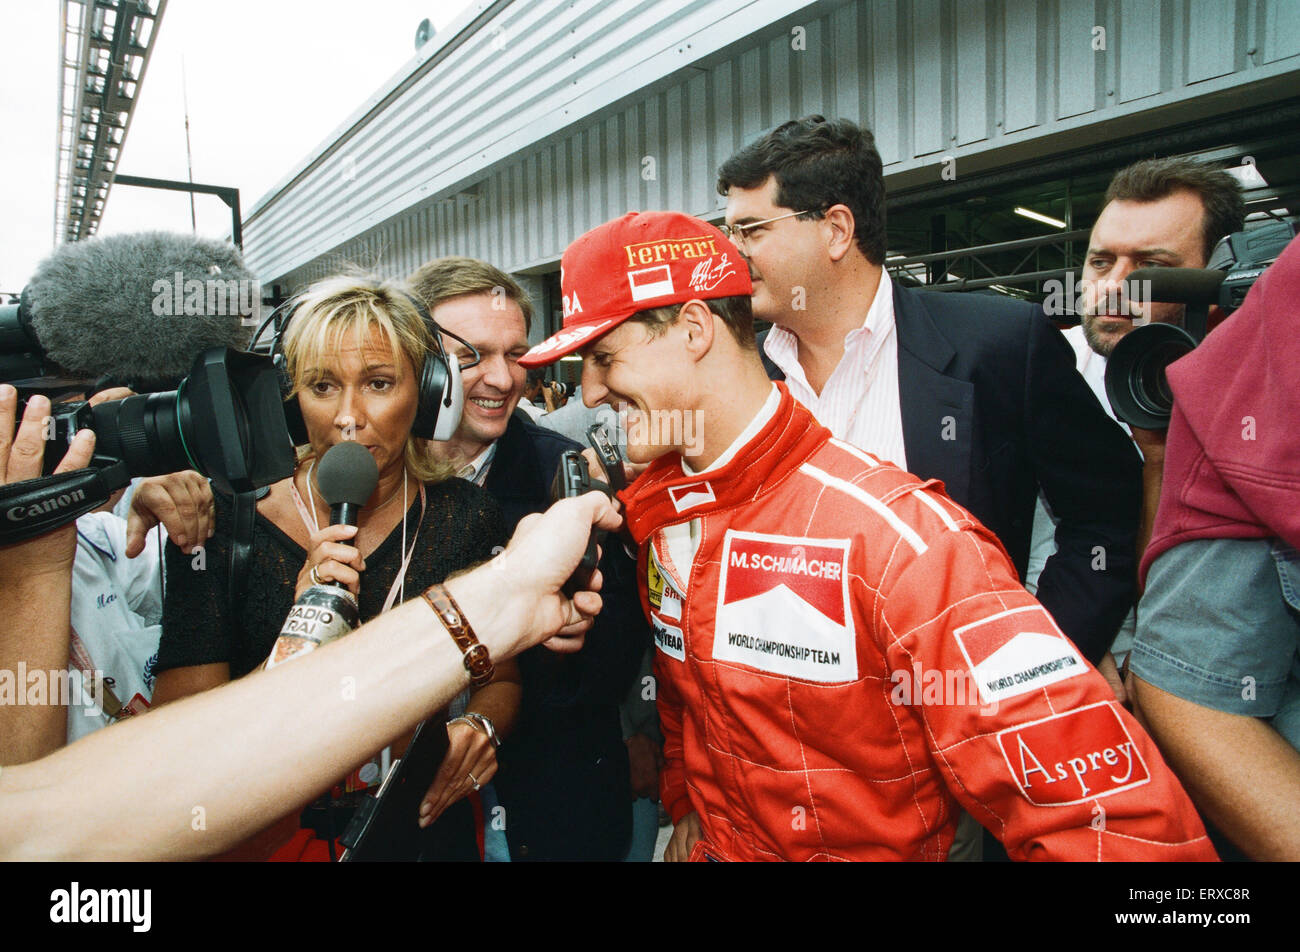 Michael Schumacher nació el 3 de enero de 1969, es un piloto de carreras alemán jubilado. Schumacher es siete veces Campeón del Mundo de Fórmula Uno y es ampliamente considerado como uno de los grandes pilotos de F1 de todos los tiempos.posee muchas de Fórmula Uno del conductor registros, incluyendo la mayoría de los campeonatos de victorias de carrera vueltas rápidas pole positions y más carreras ganadas en una sola temporada - 13 en 2004. En 2002 se convirtió en el único piloto en la historia de la Fórmula 1 para finalizar entre los tres primeros en cada carrera de la temporada y luego también rompió el record de más podios consecutivos. Según el sitio web oficial de la Fórmula Uno es Foto de stock